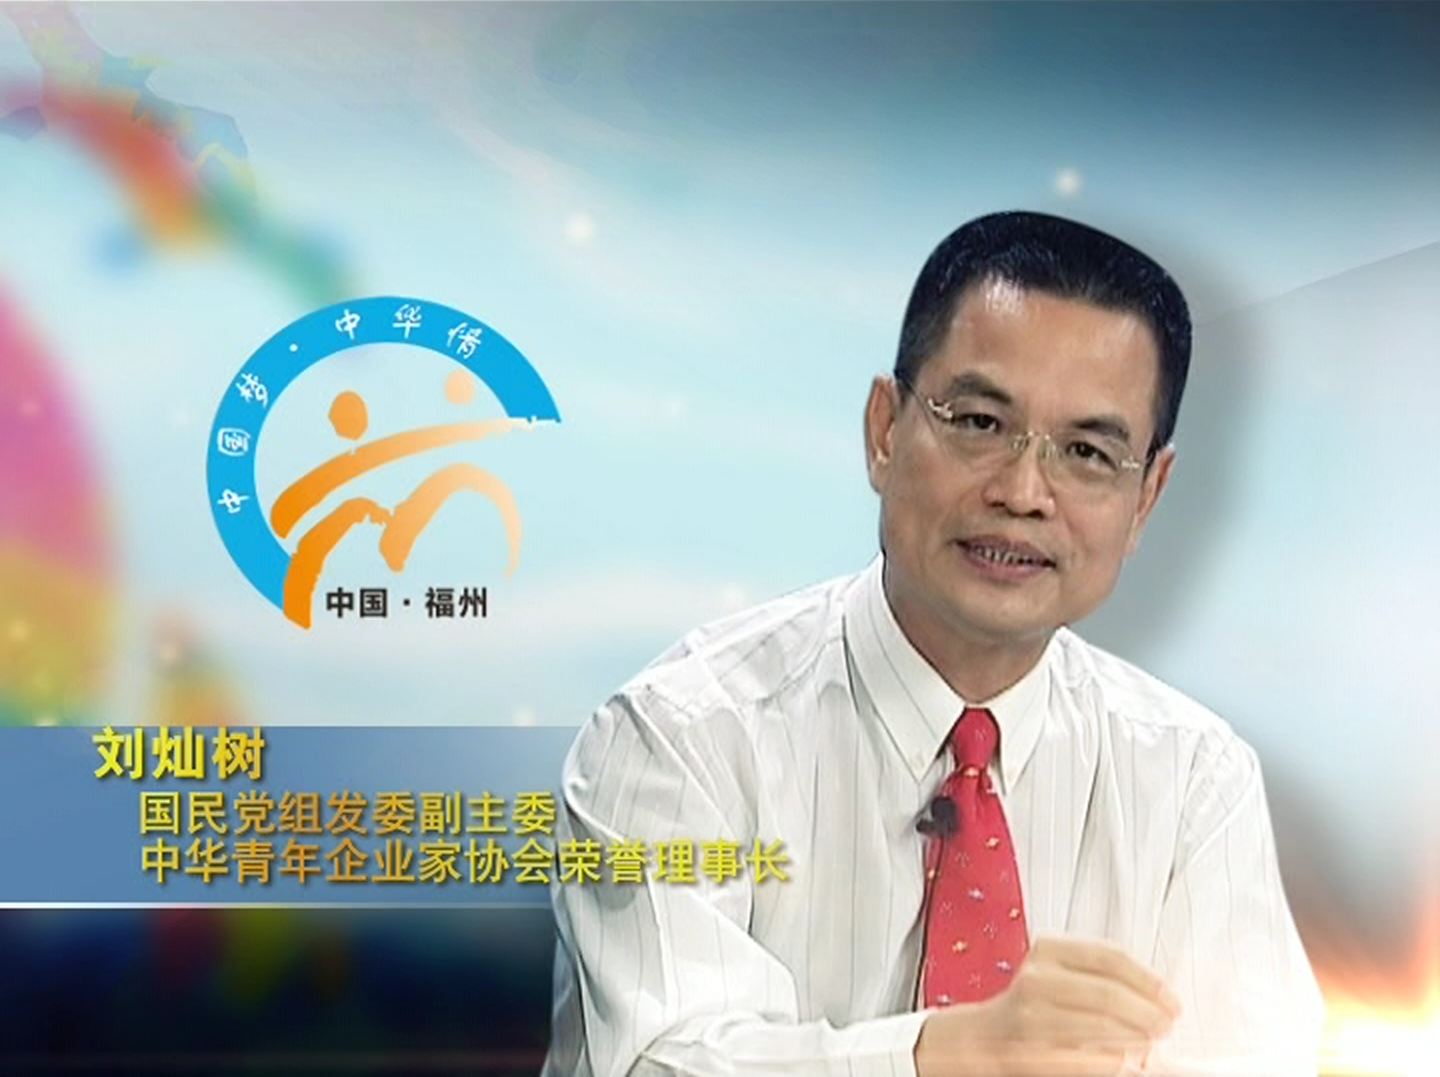 劉榮譽理事長受邀出席 第二届海峡青年節大型訪談節目